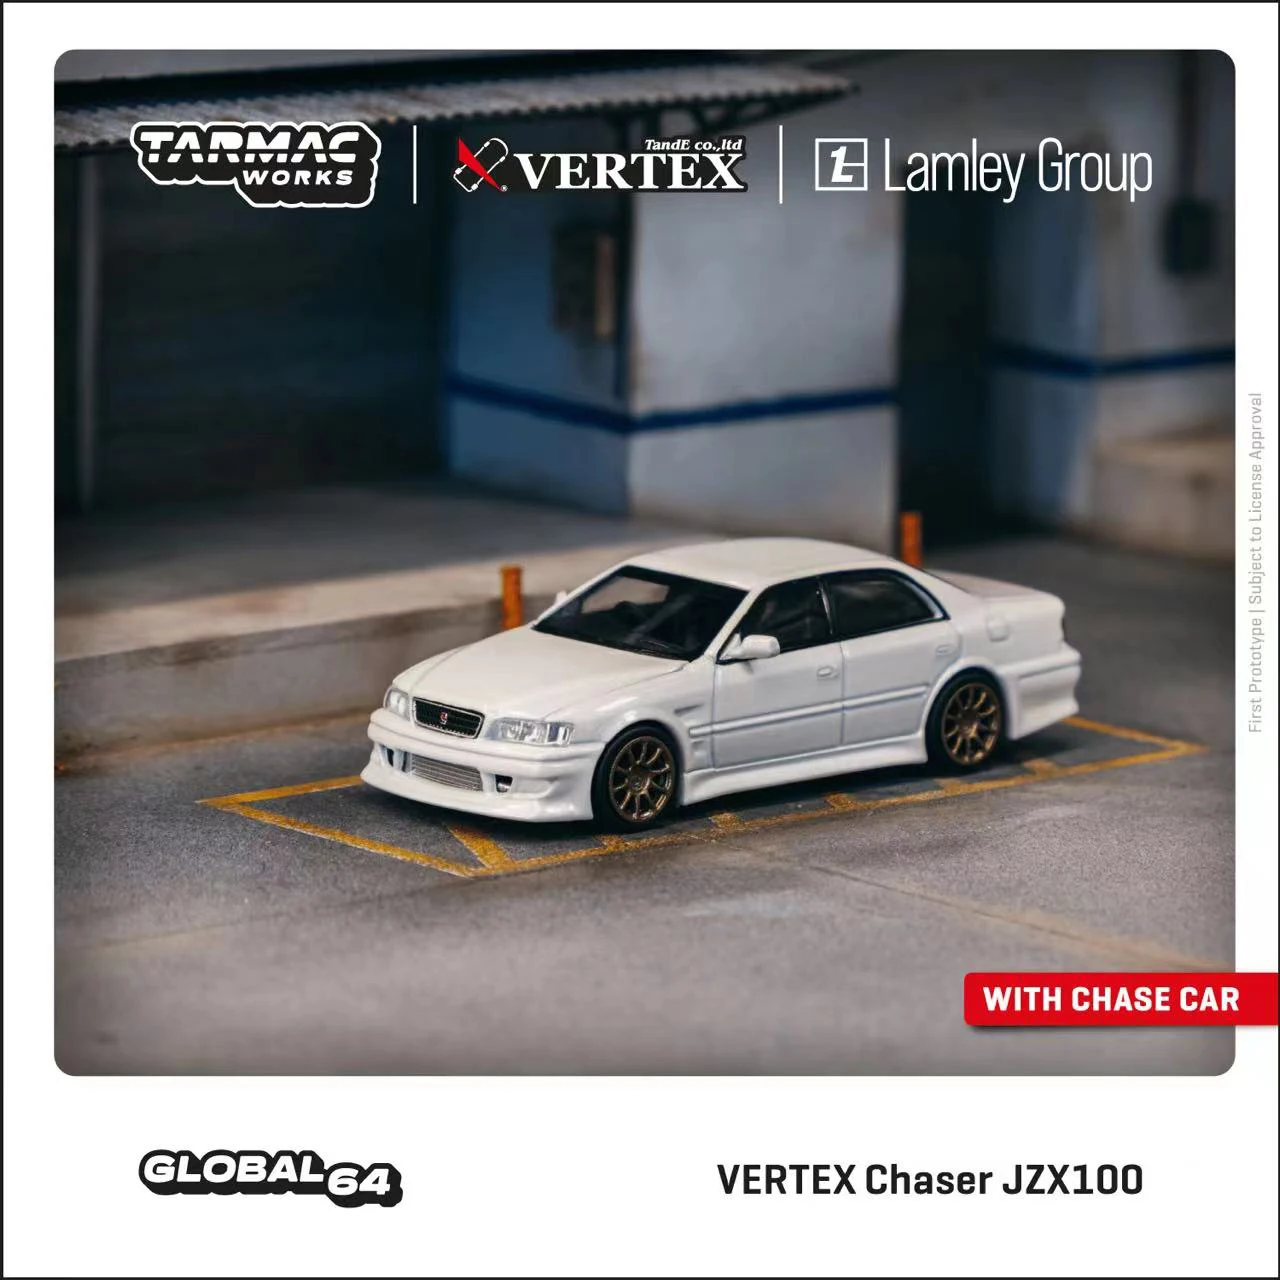 

TW в наличии 1:64 VERTEX Chaser JZX100 белая металлическая коллекция литых под давлением моделей автомобилей, миниатюрные игрушки для машинок Tarmac Works